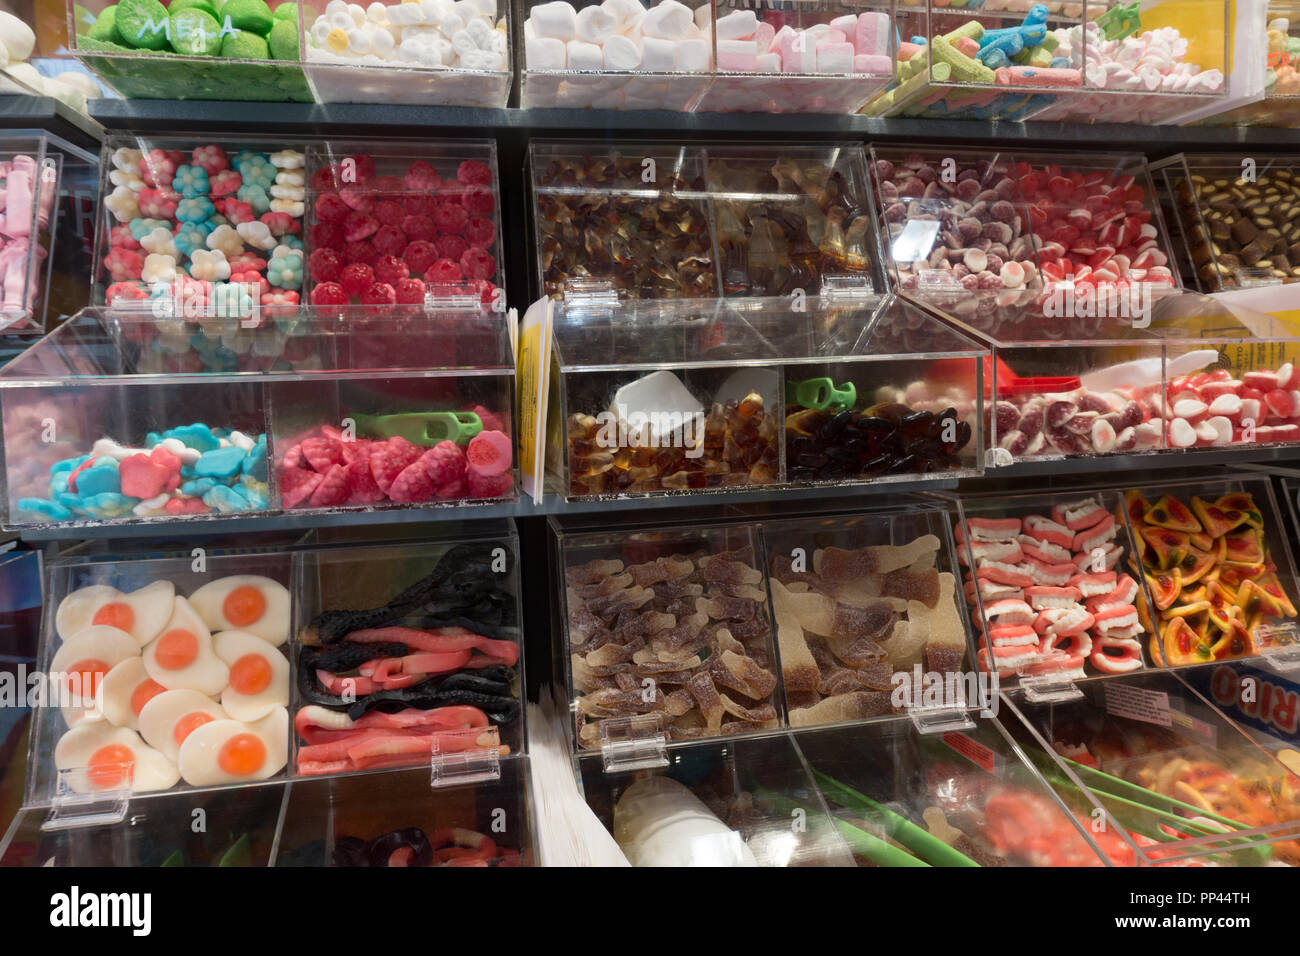 Affichage de choisir et mélanger les sucreries en boutique. La Sardaigne. Italie Banque D'Images